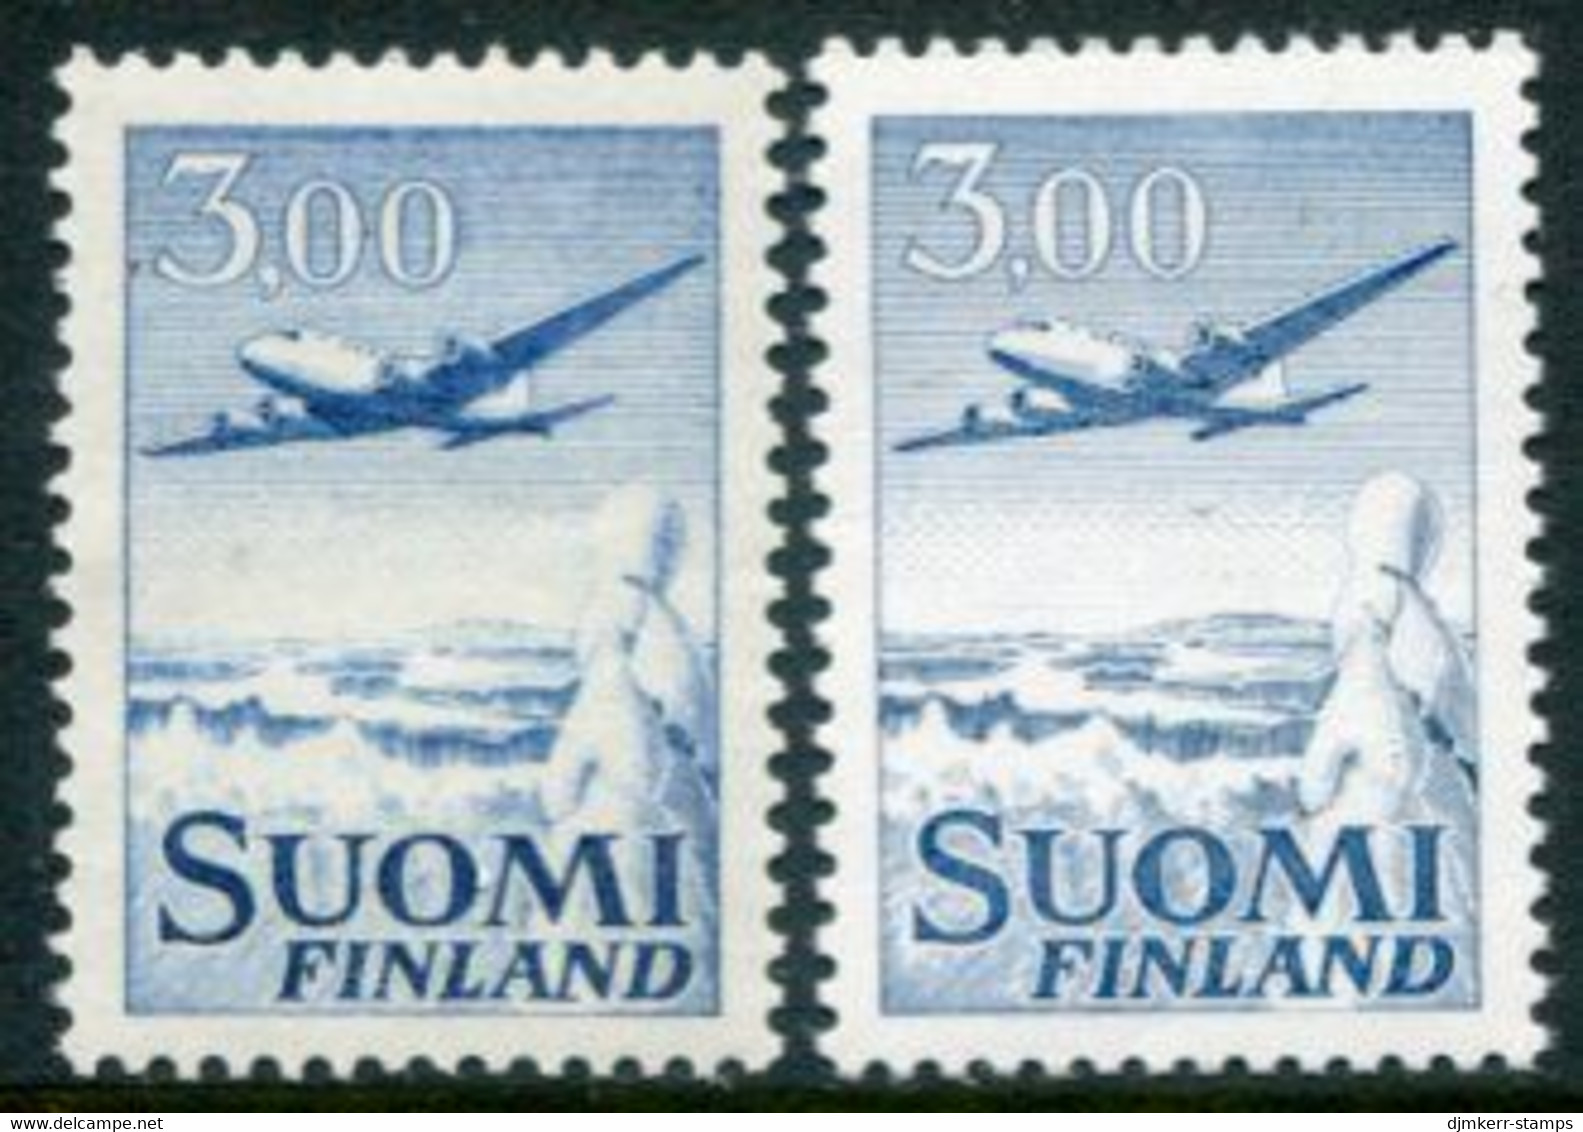 FINLAND 1963  Airmail 3.00 M. Both Types MNH / **  Michel 579x I, 579y II - Ungebraucht